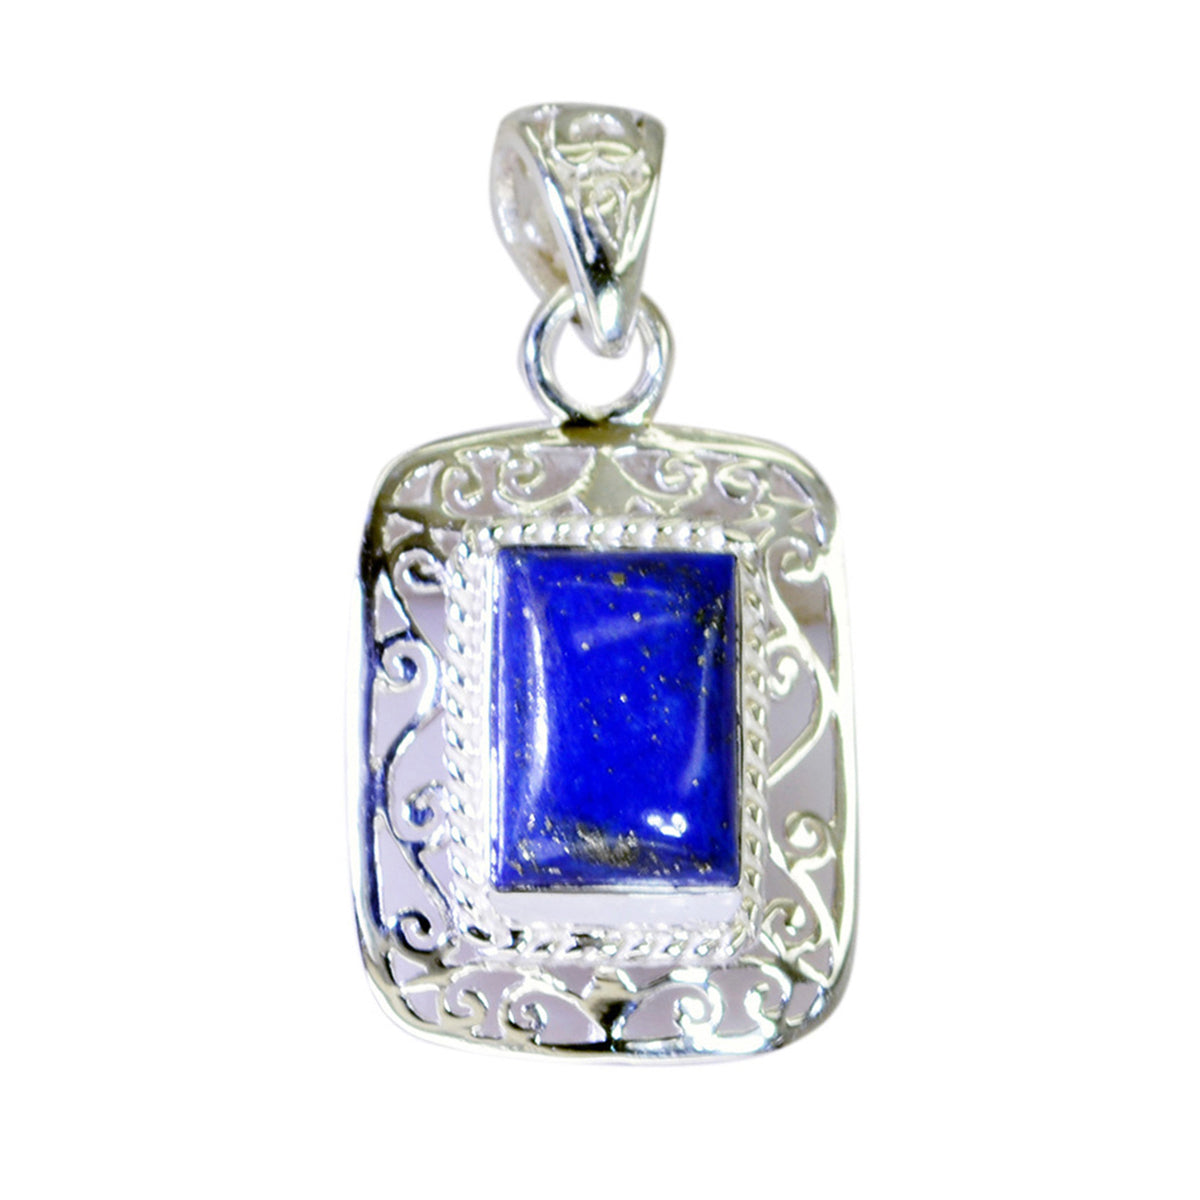 Riyo Prachtige Edelsteen Octagon Cabochon Nevy Blue Lapis Lazuli 1188 Sterling Zilveren Hanger Cadeau Voor Vriendin